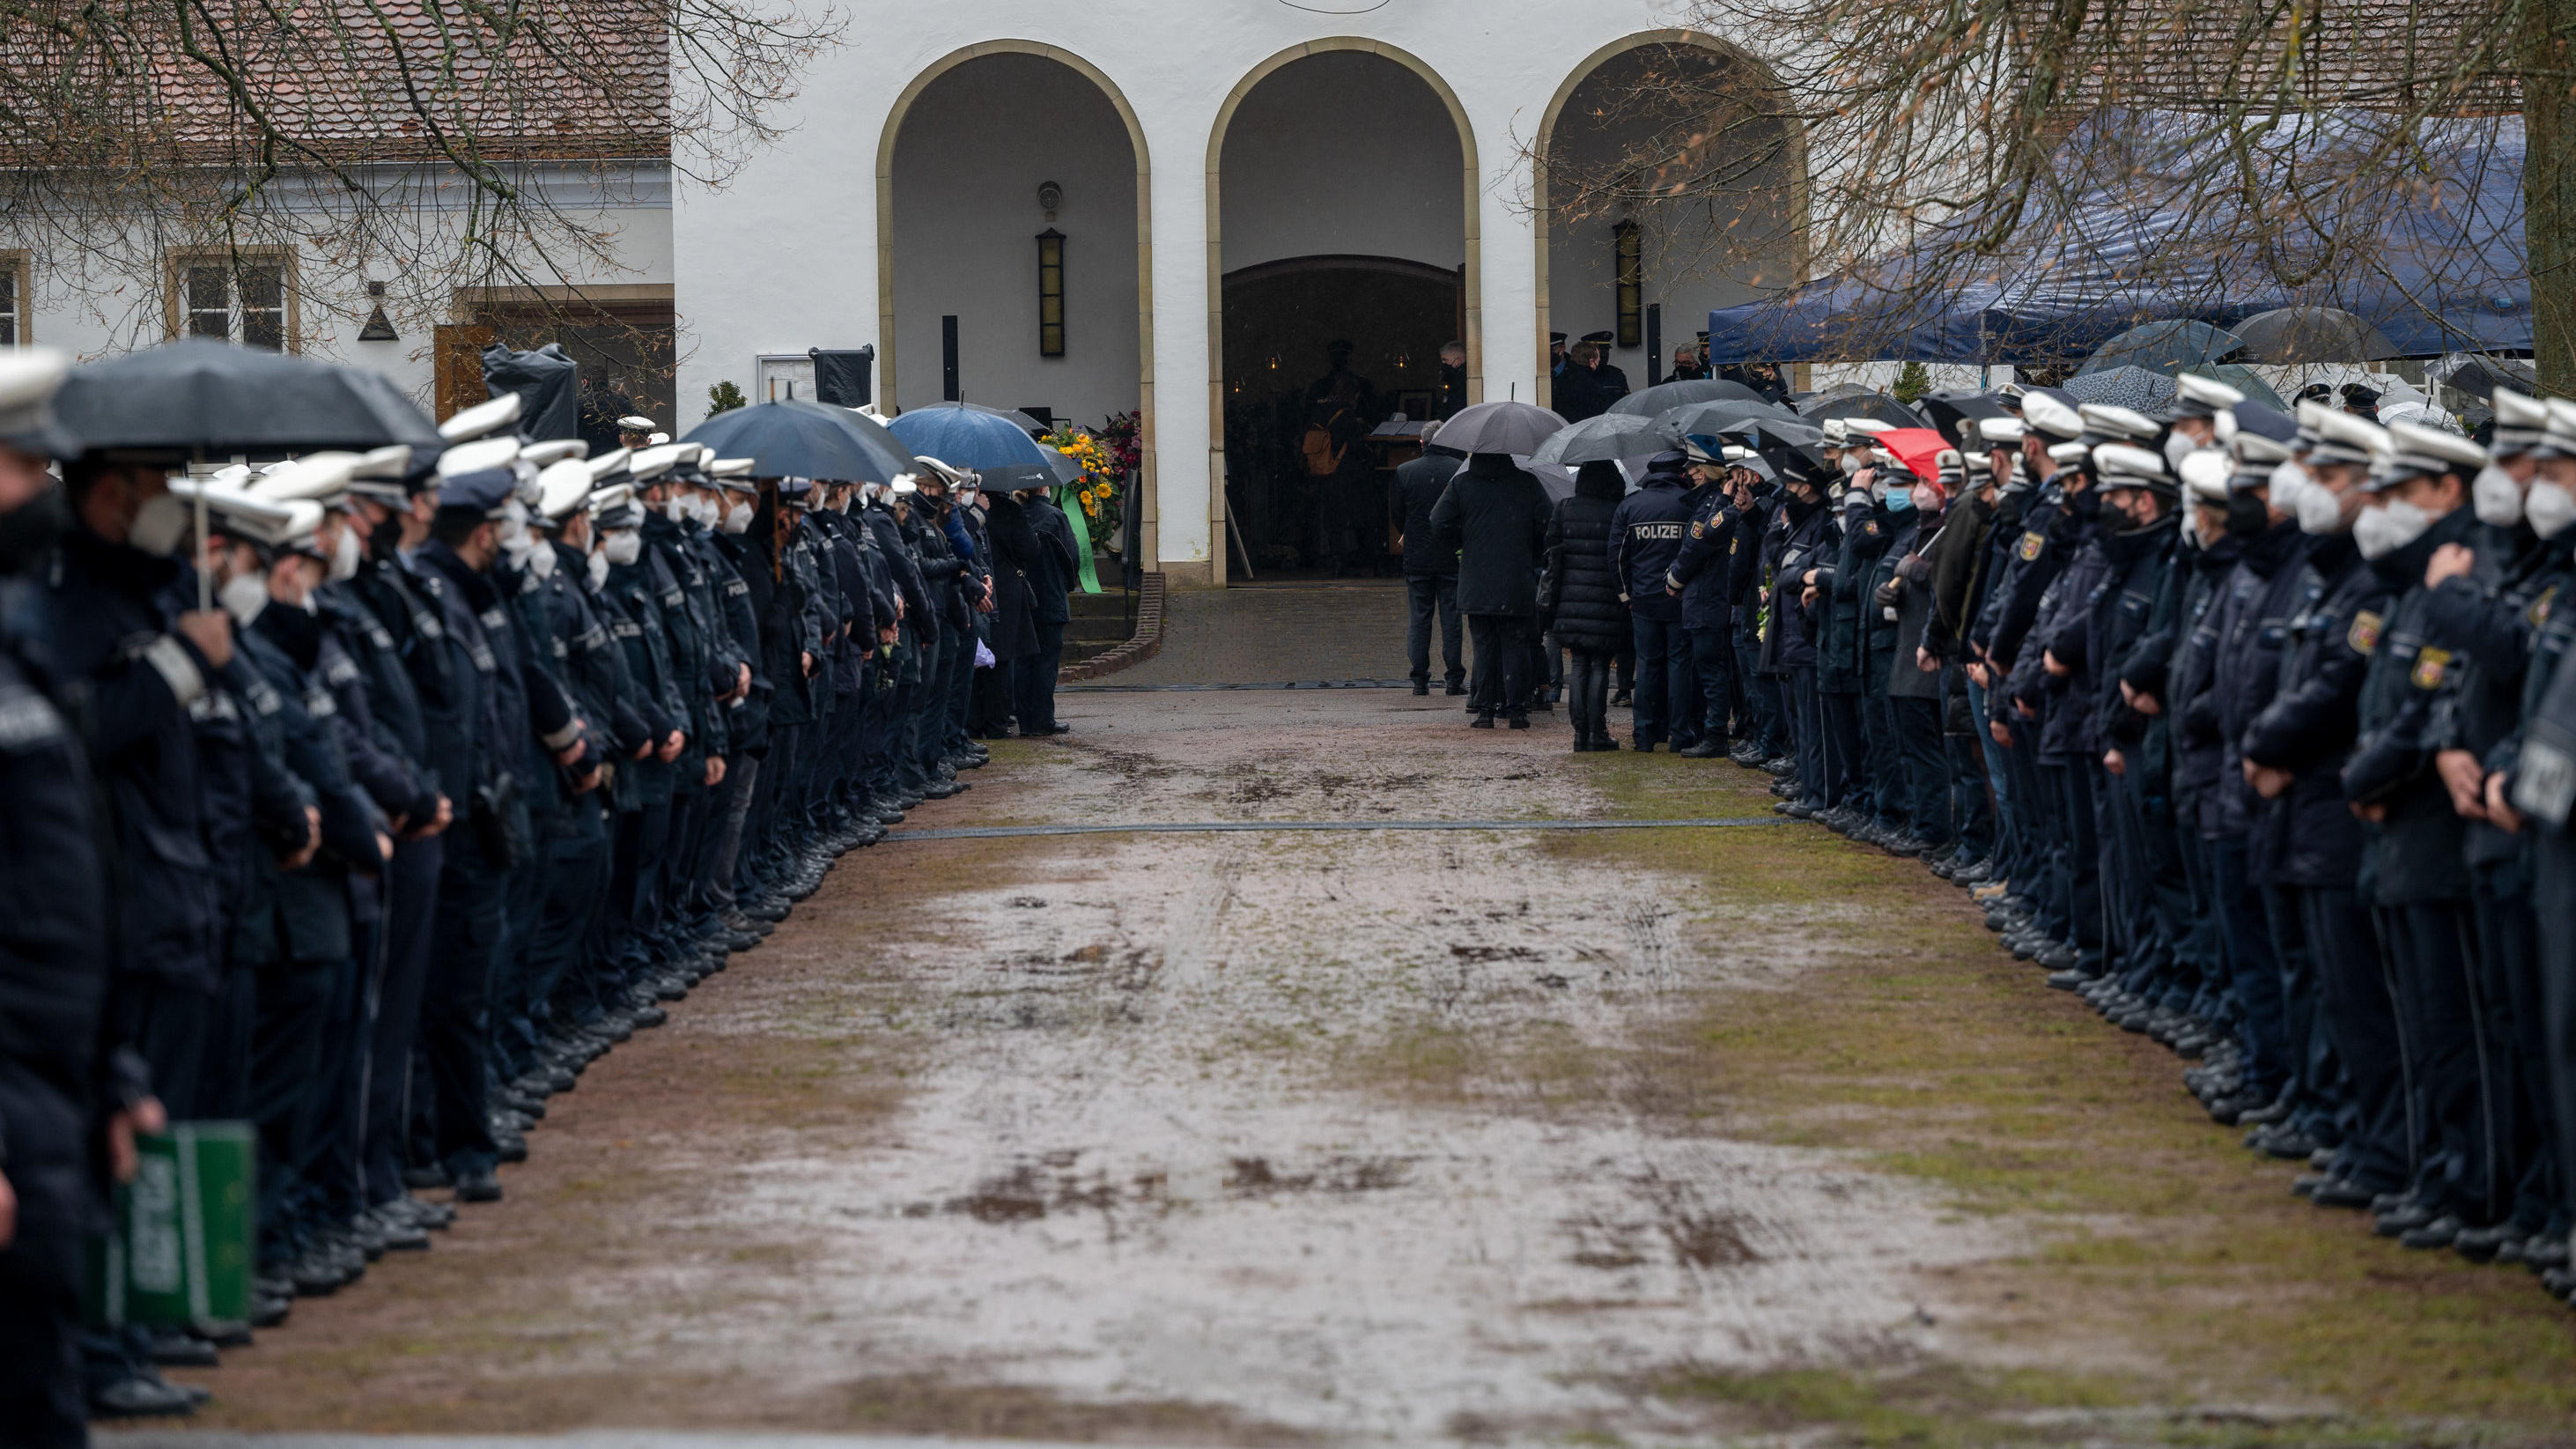 16.02.2022, Saarland, Homburg: Polizisten und Polizistinnen stehen an der Kirche Spalier beim Gedenkgottesdienst für eine getötete Polizistin. Nach der Bestattung eines ermordeten Polizisten wird nun auch seine getötete Kollegin beigesetzt. Der 29 Ja